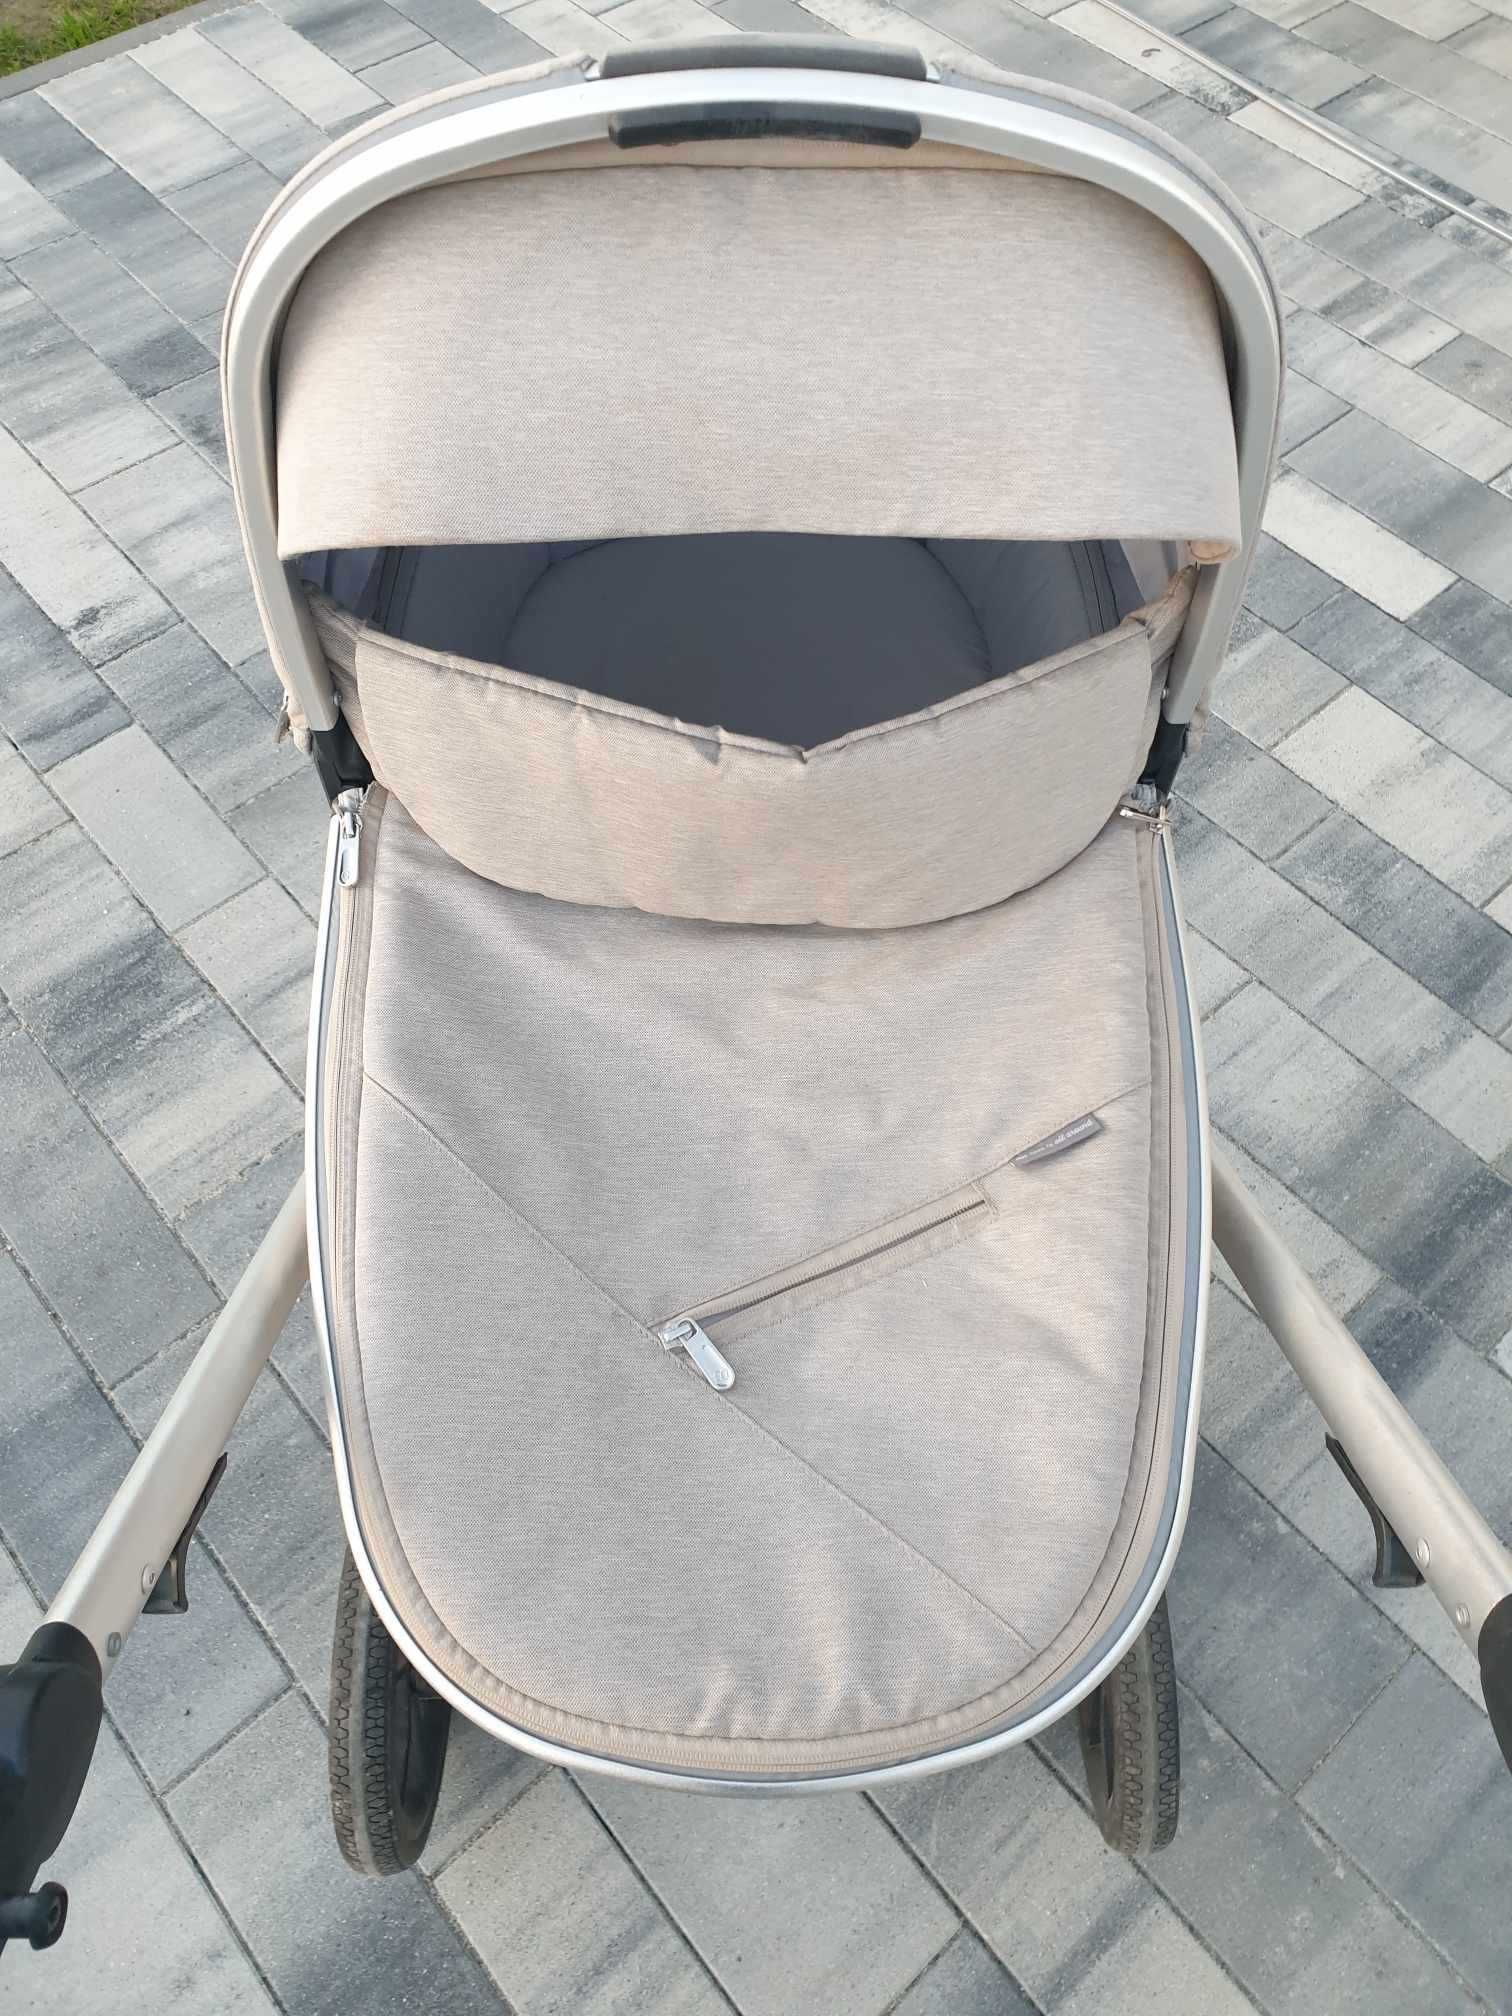 Wózek dziecięcy 2w1 Baby Design BUENO + śpiwór, folia przeciwdeszczowa